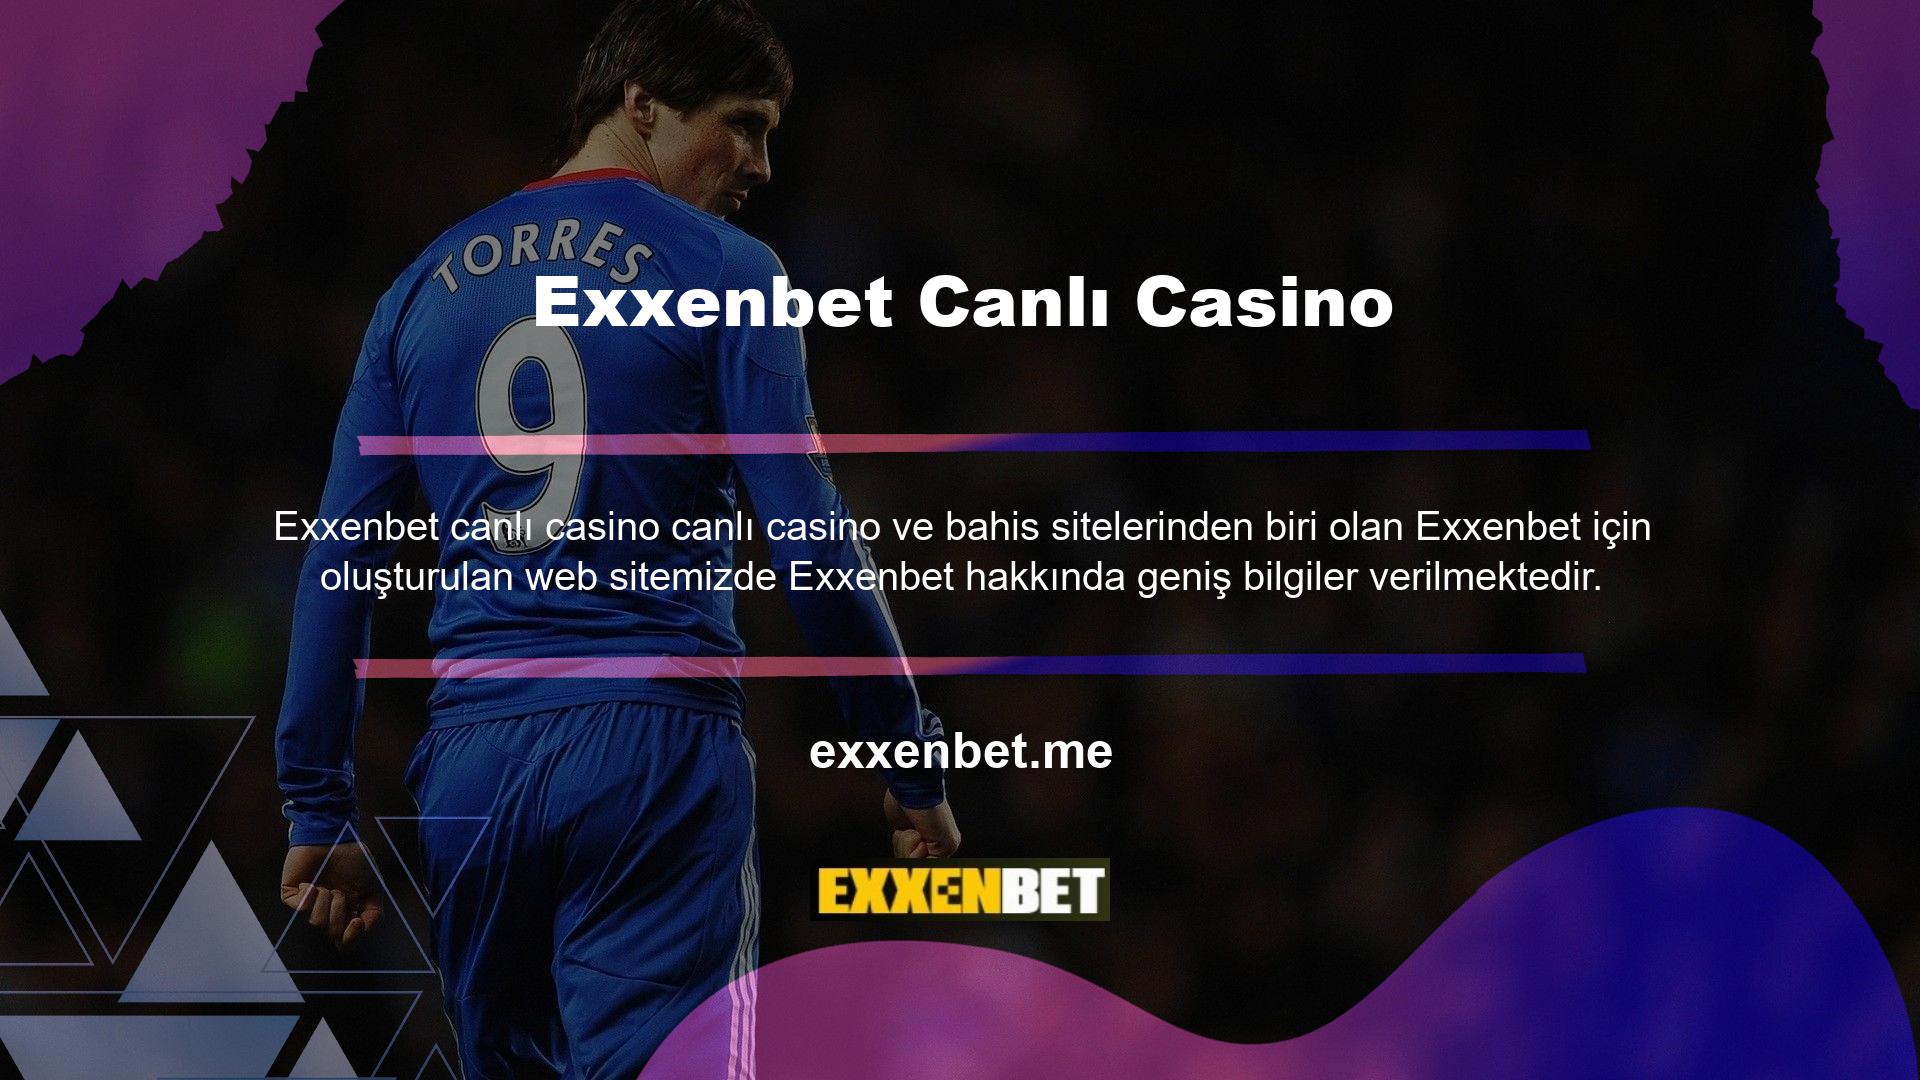 Exxenbet Casino bonusları, ödeme yöntemleri, erişim adresi ve daha fazlası